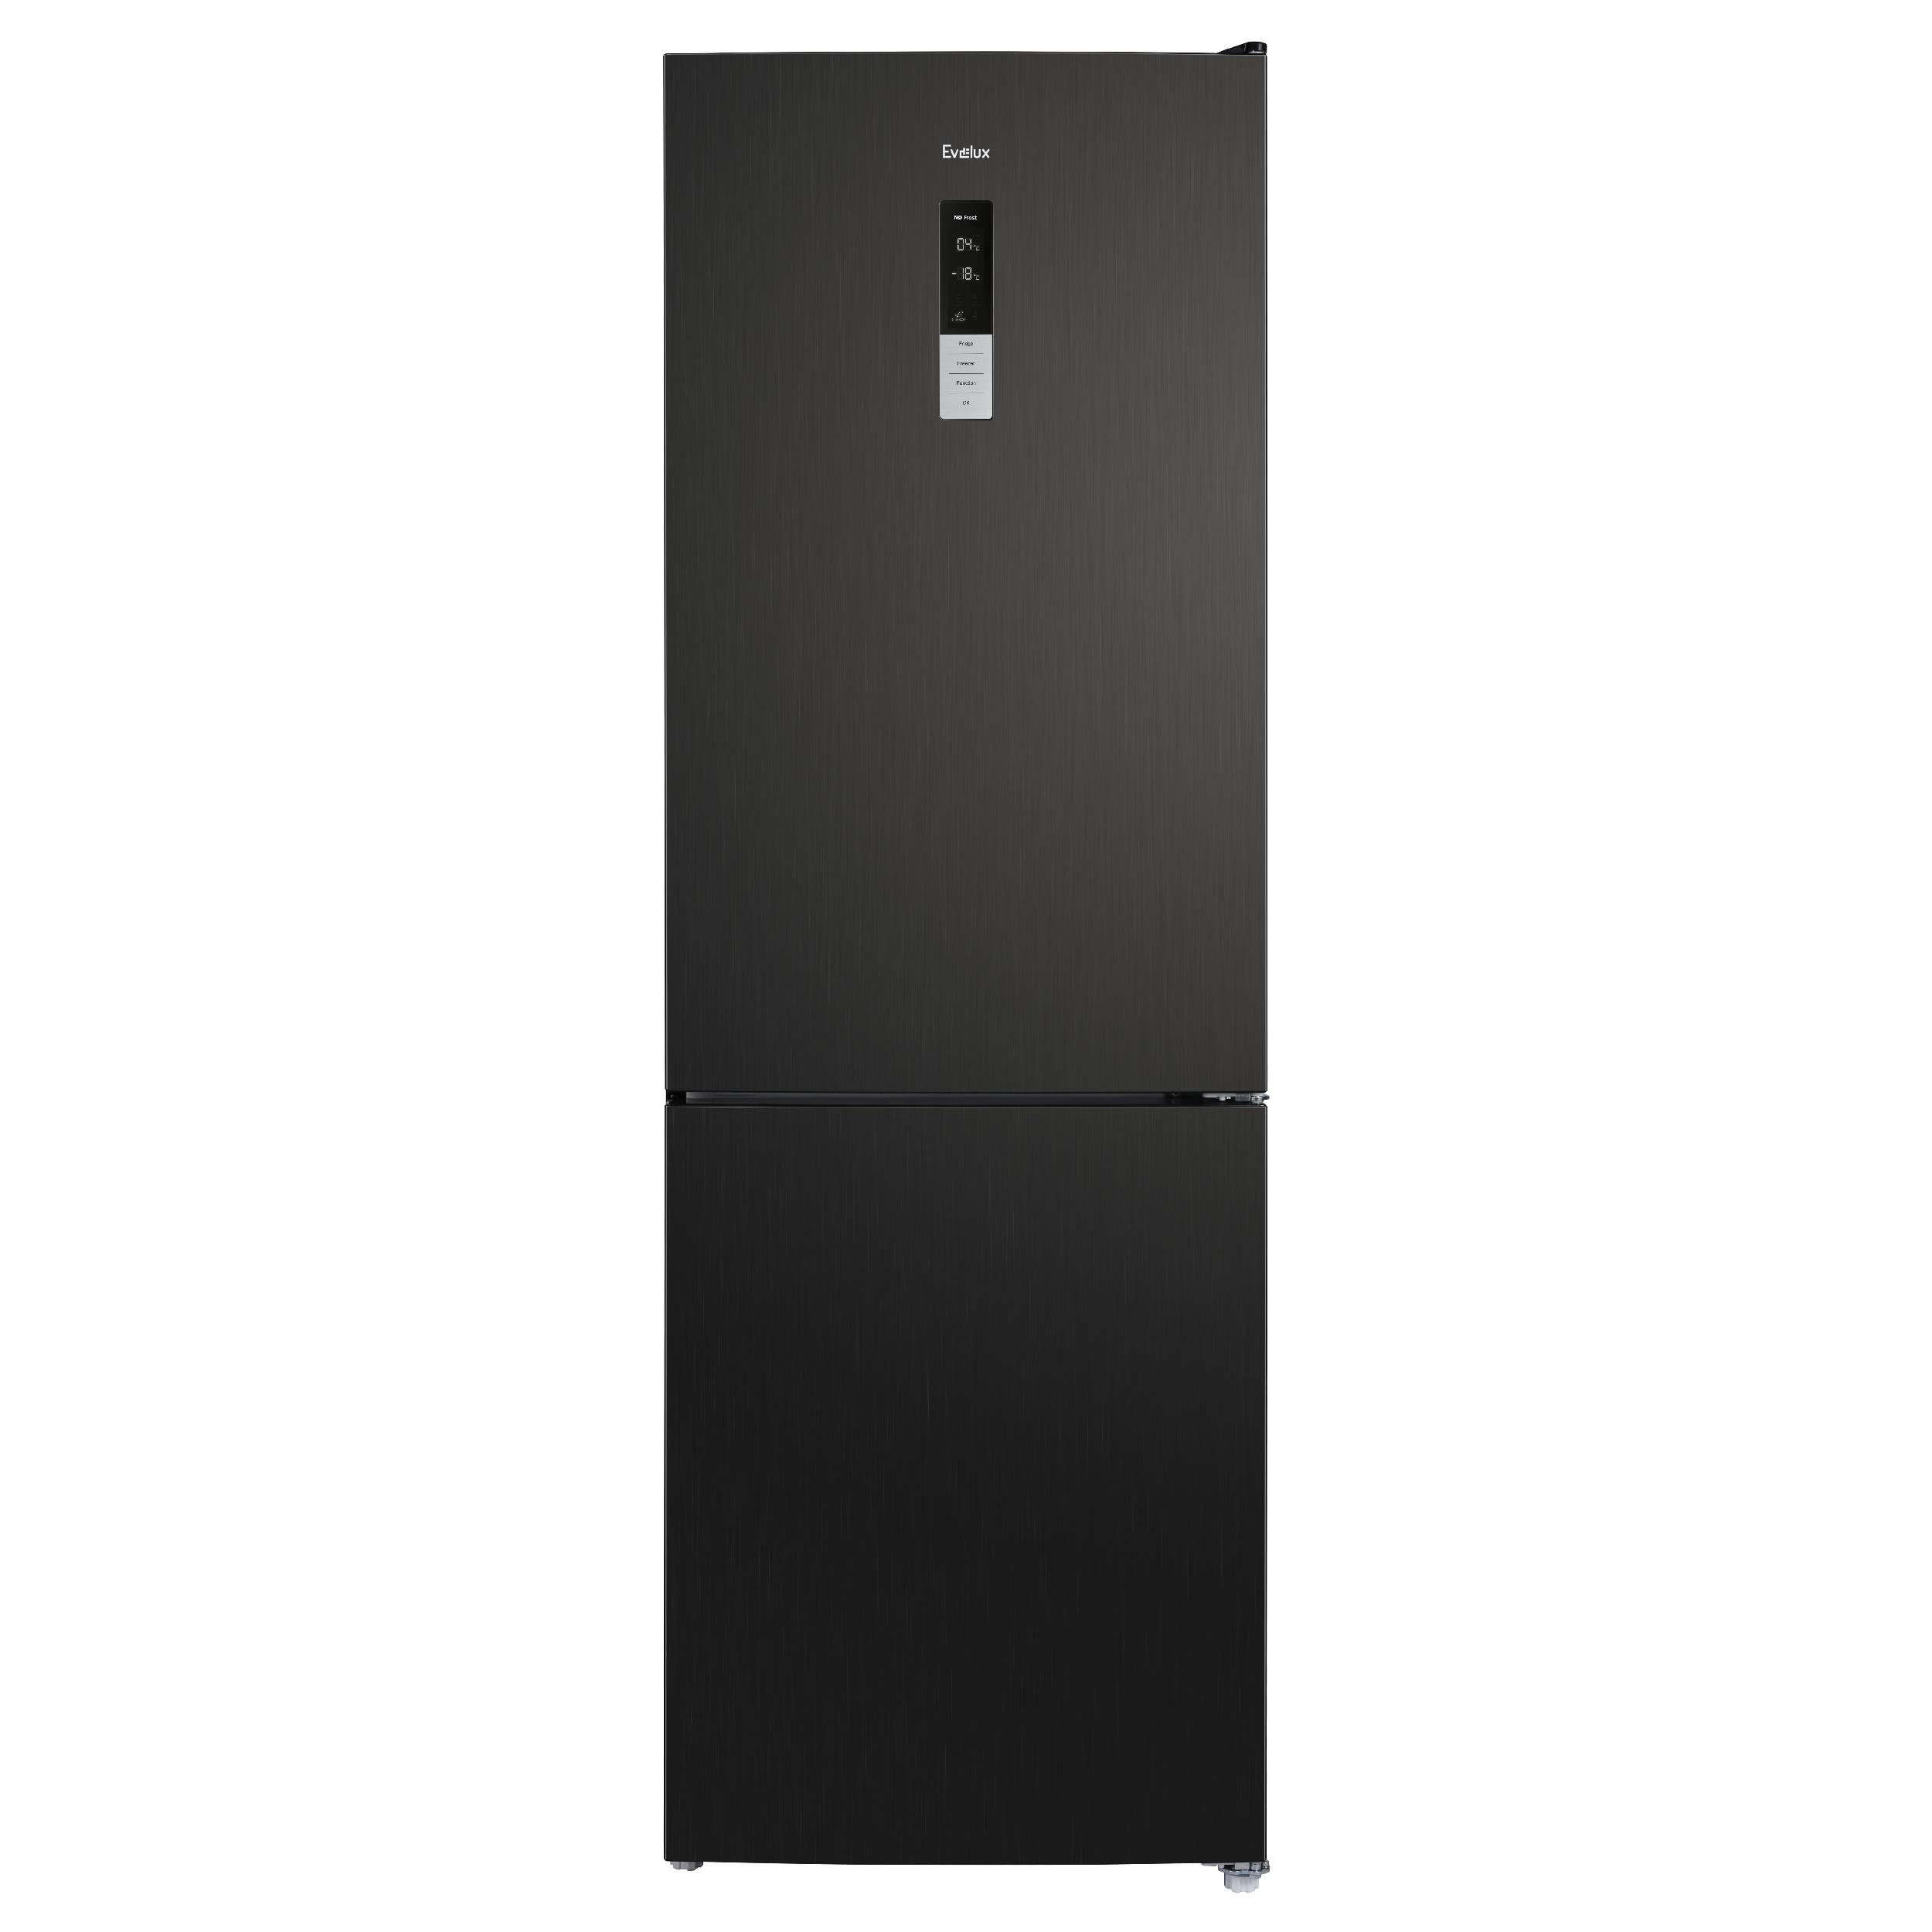 Холодильник Evelux FS 2201 DXN черный комплект спутникового телевидения триколор 046 91 00054121 центр 1tb gs b622 1год подписки черный